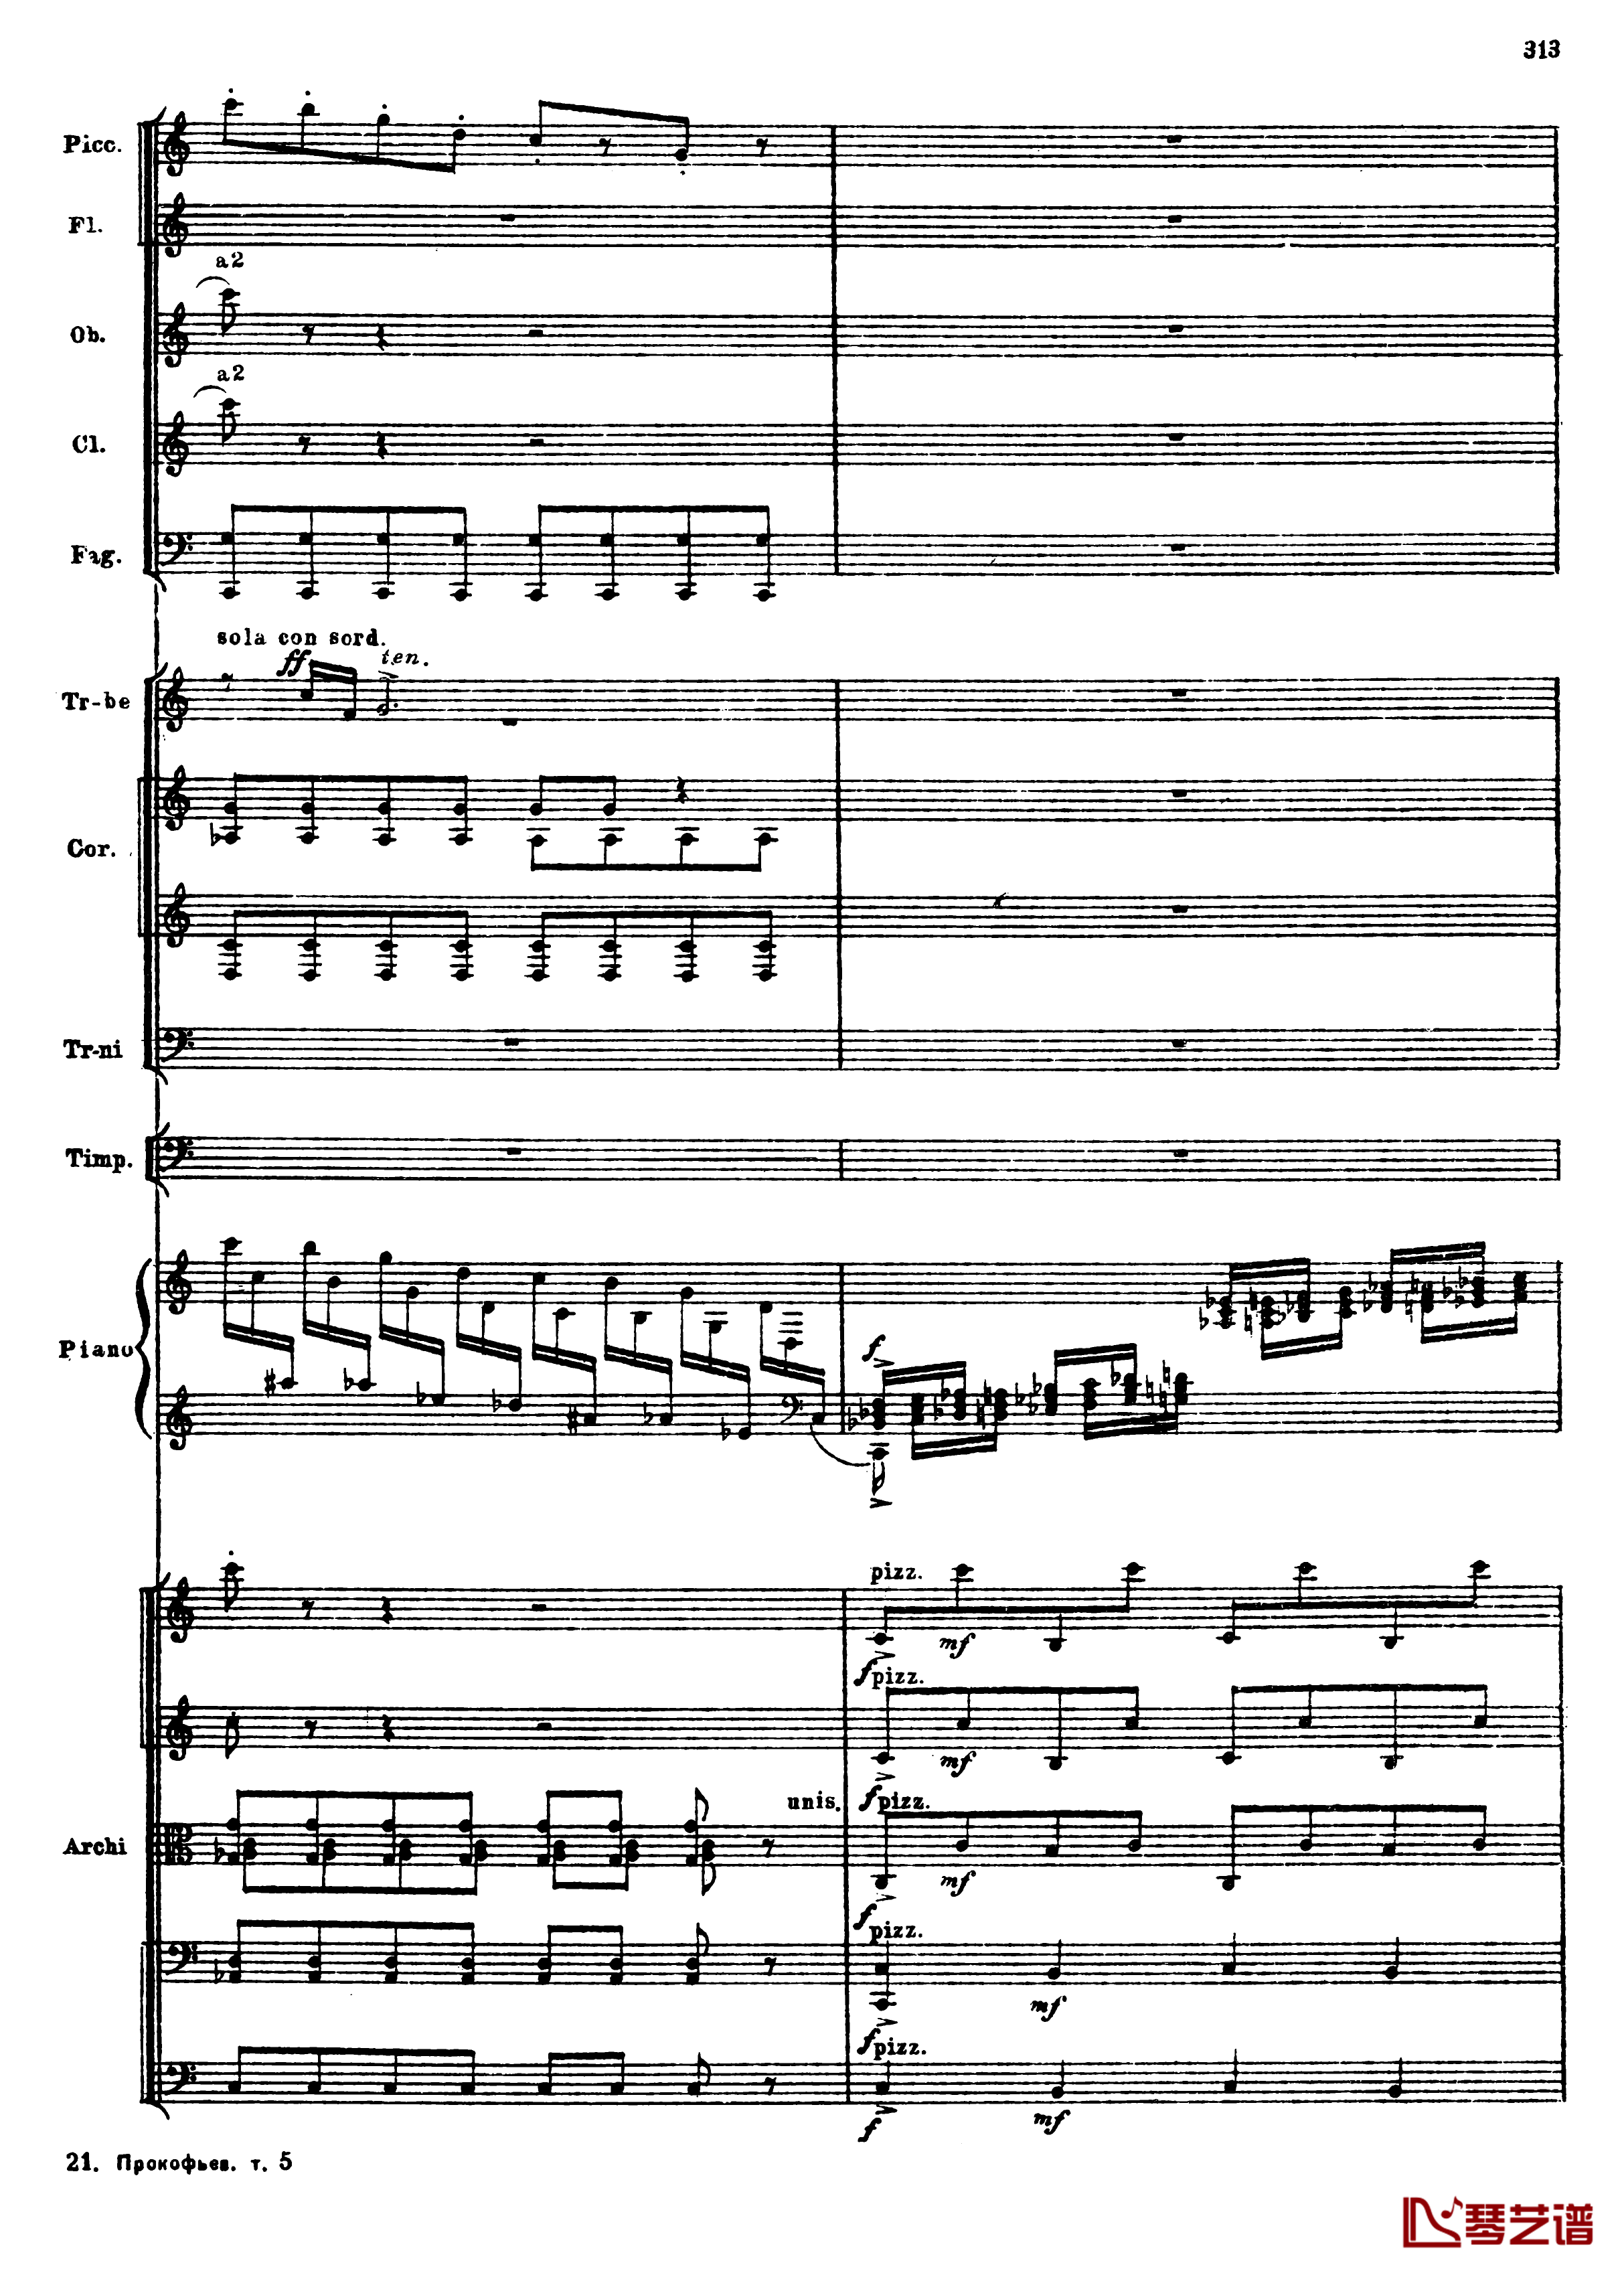 普罗科菲耶夫第三钢琴协奏曲钢琴谱-总谱-普罗科非耶夫45